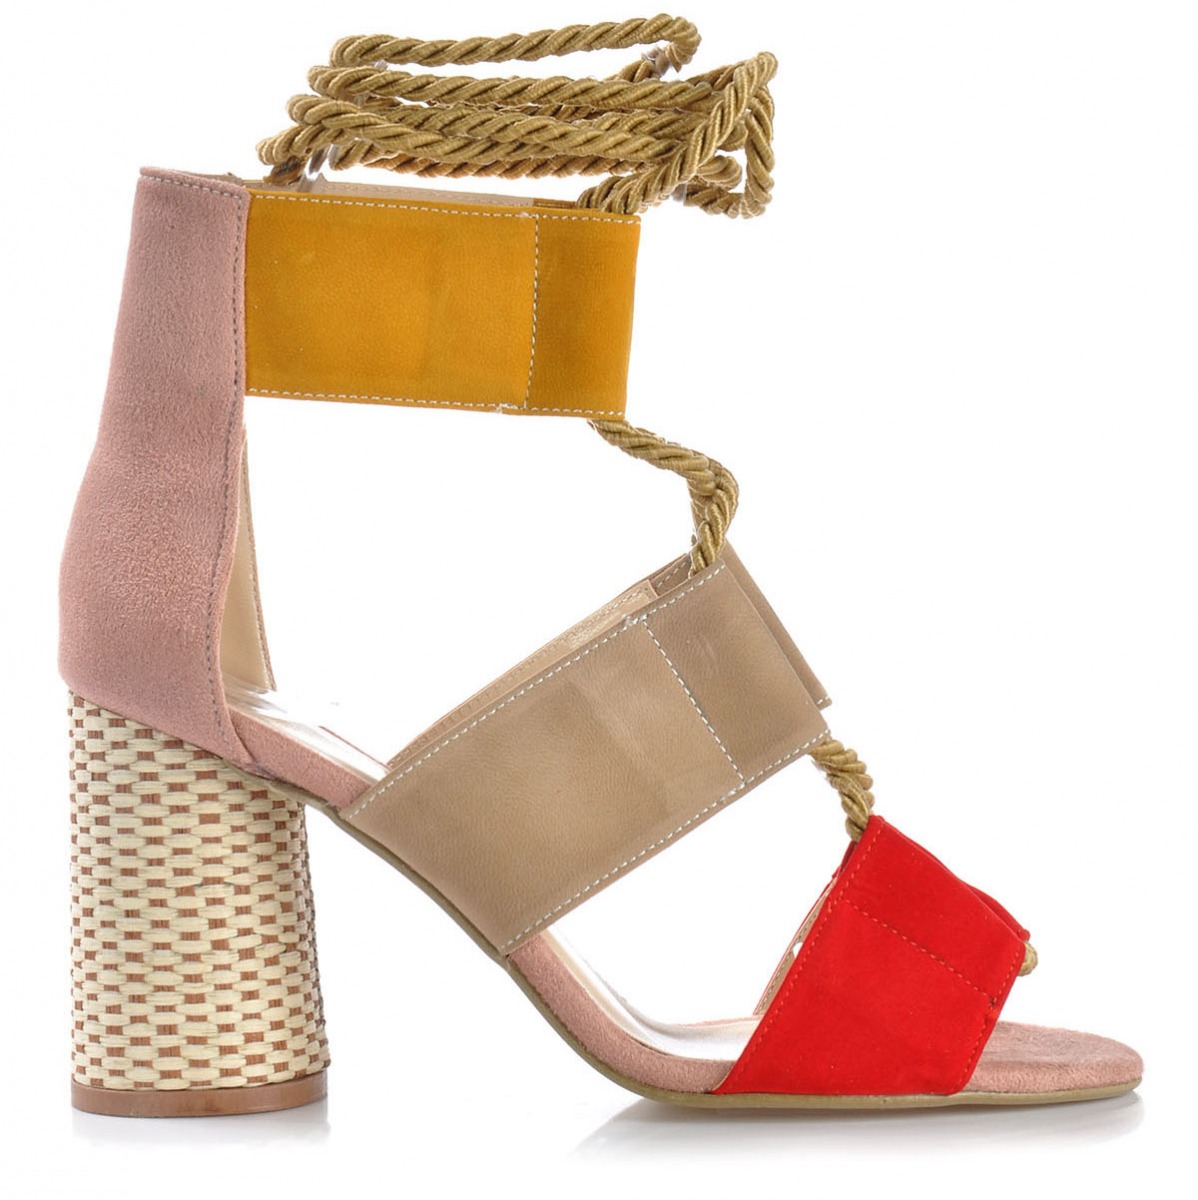 Flo Kadın  Kırmızı-Süet Klasik Topuklu Ayakkabı VZN-191Y. 3